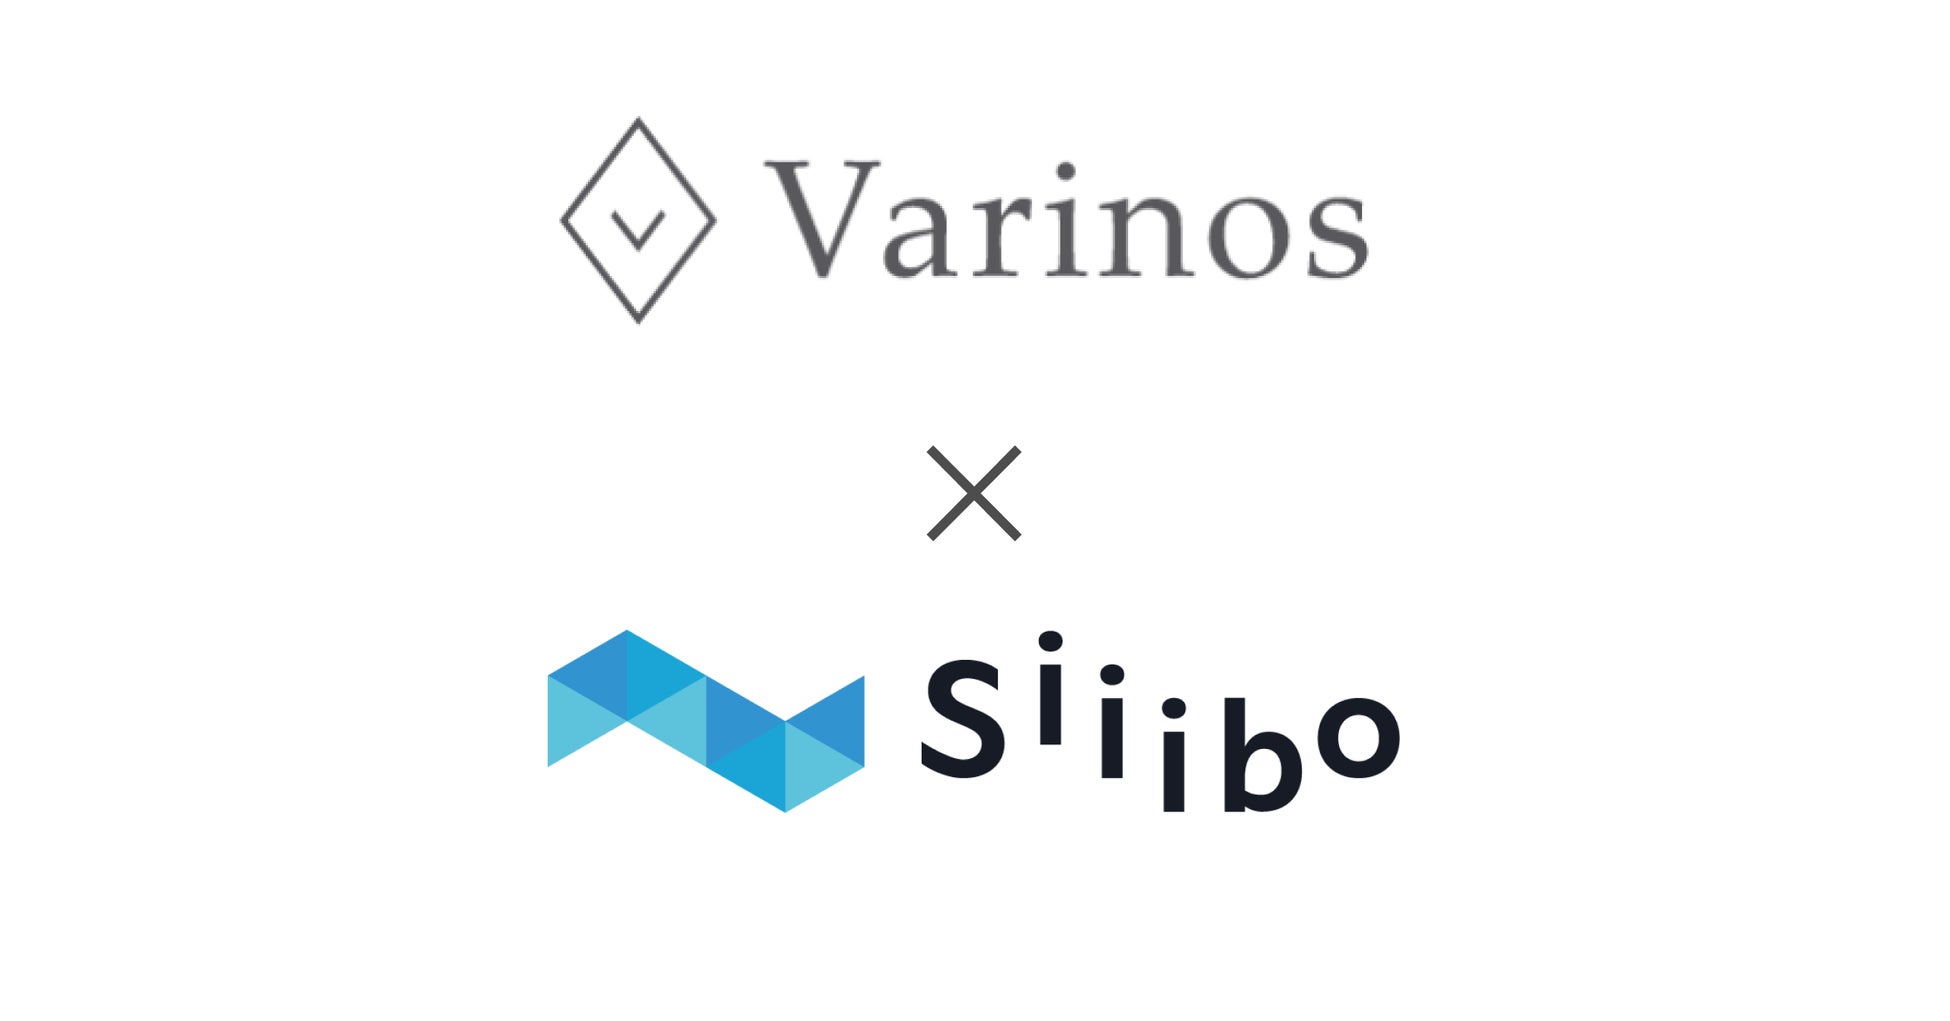 ゲノム解析技術で不妊・少子化の課題解決に挑むVarinosが、Siiibo証券を活用し社債発行